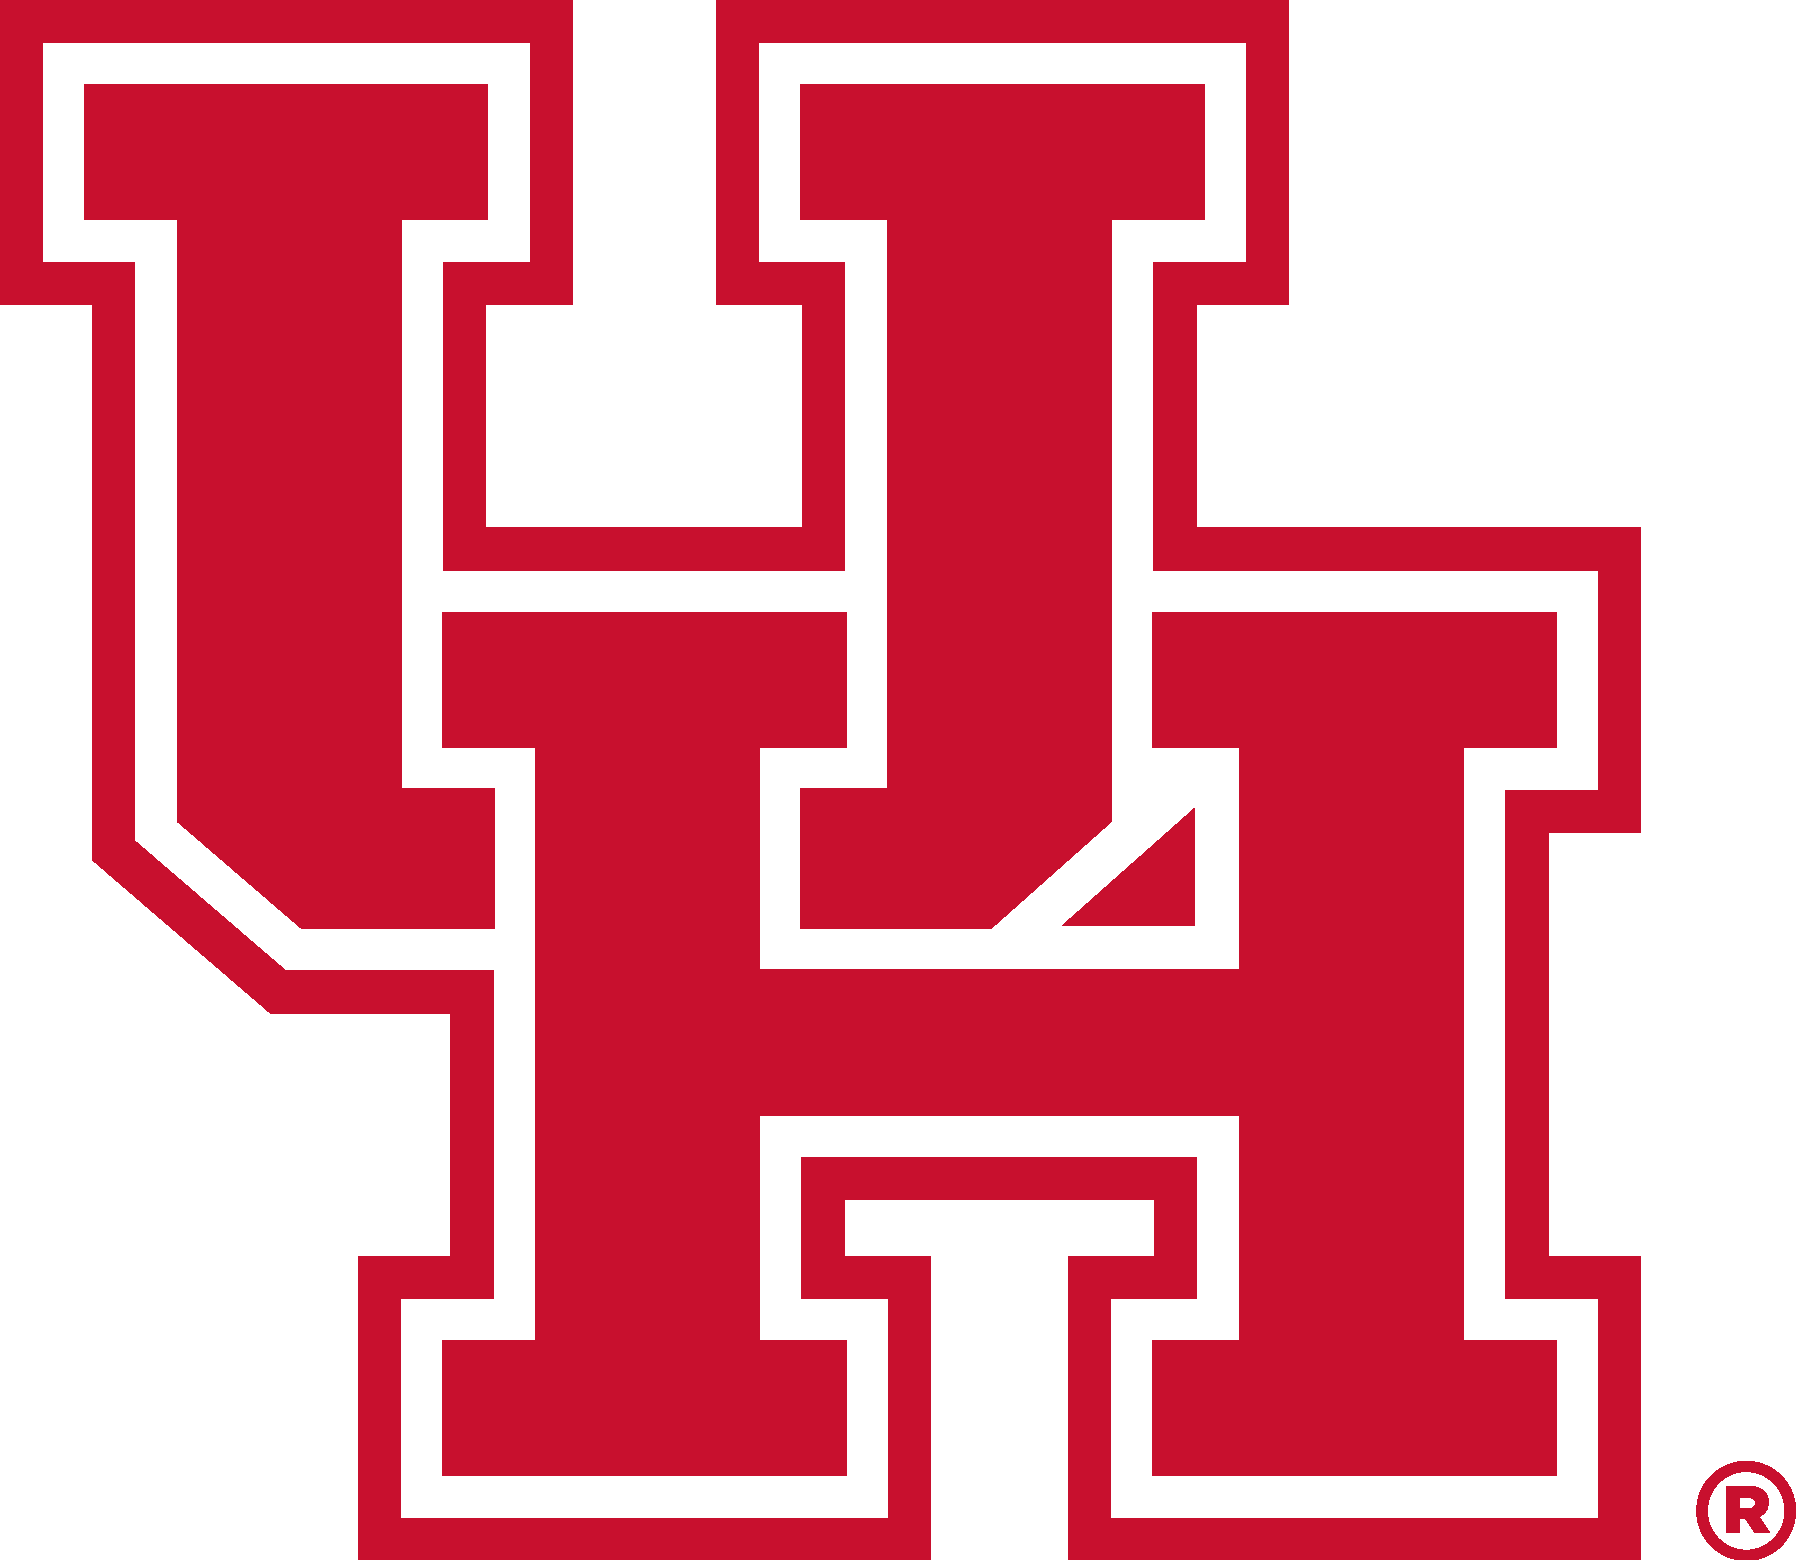 University of Houston Logo (UH) png